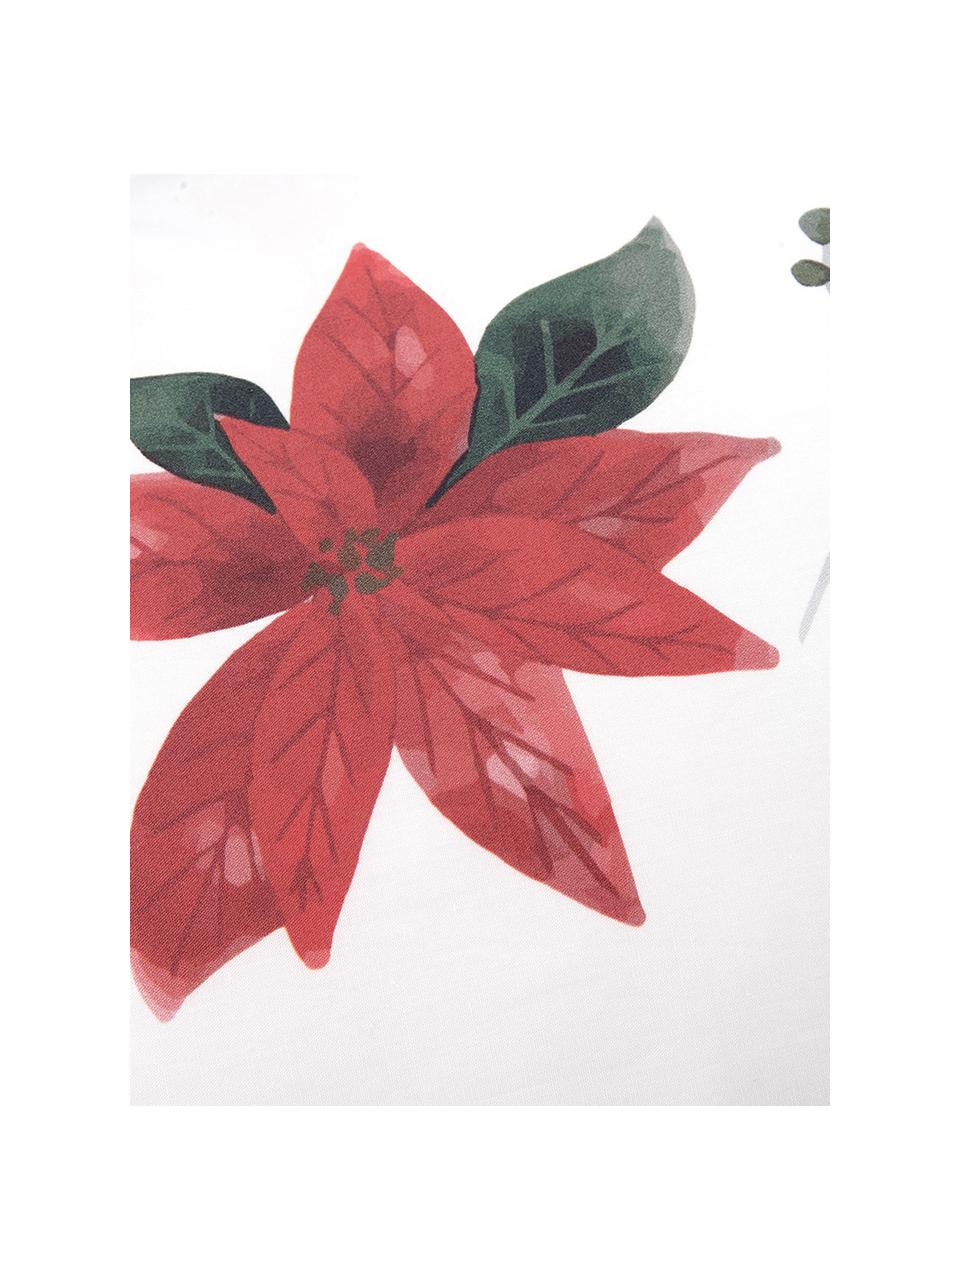 Pościel z perkalu Carol, Biały, czerwony, zielony, 240 x 220 cm